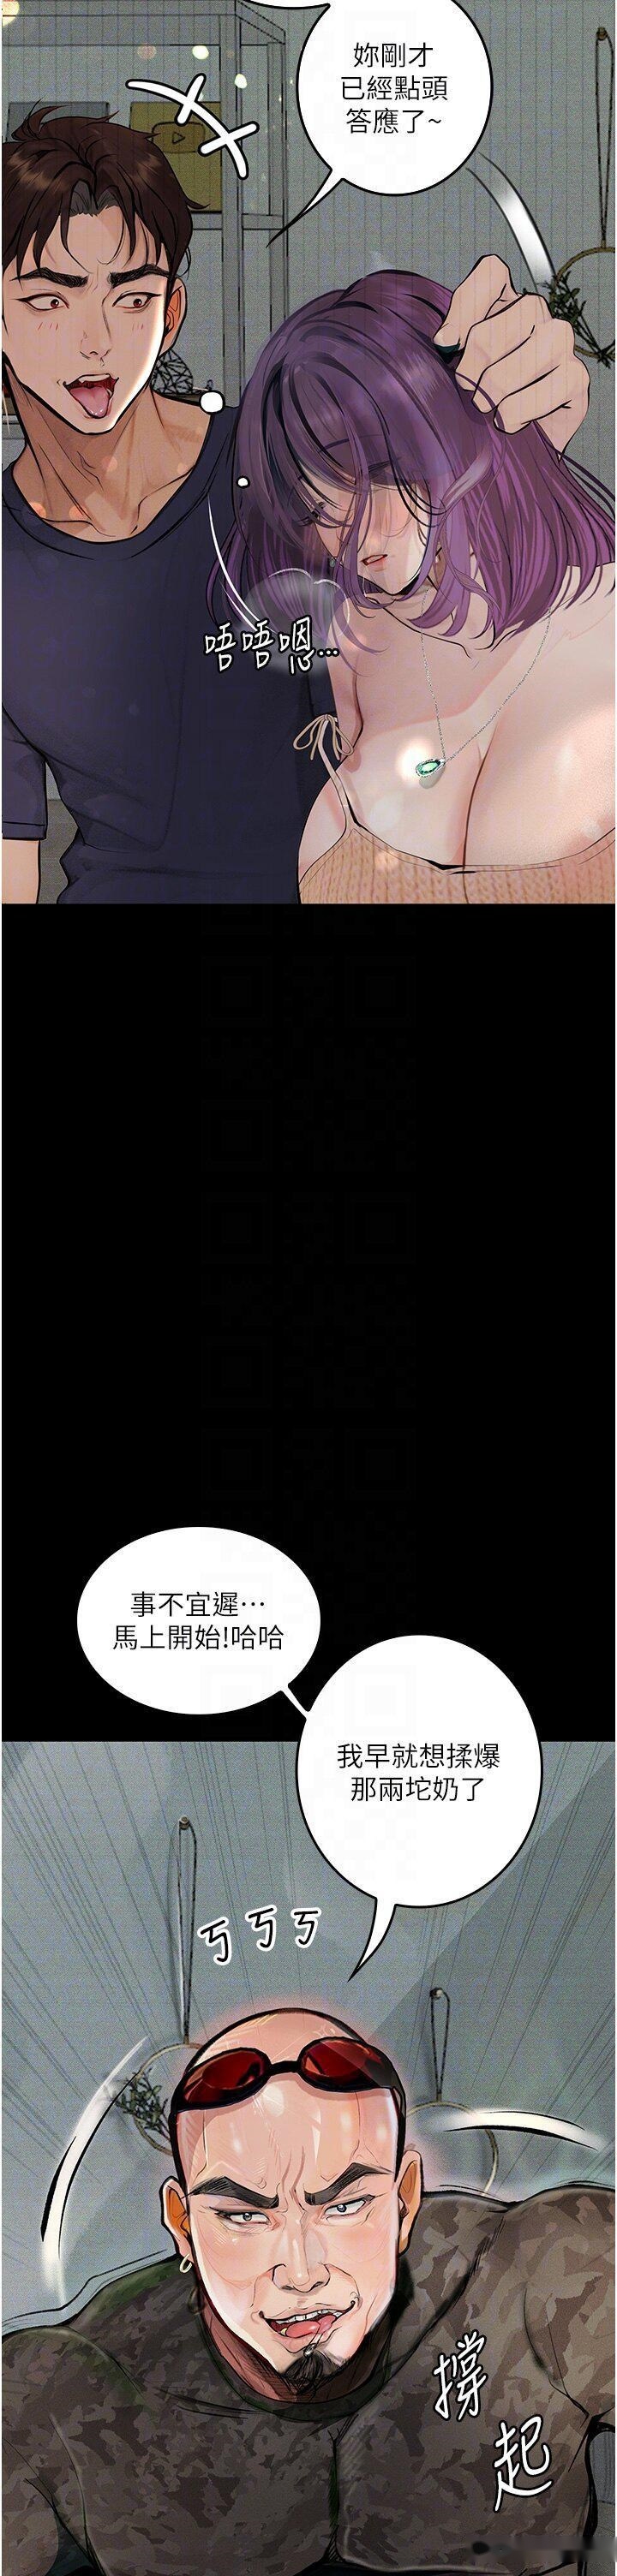 韩国漫画堕落物语韩漫_堕落物语-第11话-在几千人面前被强奸在线免费阅读-韩国漫画-第26张图片